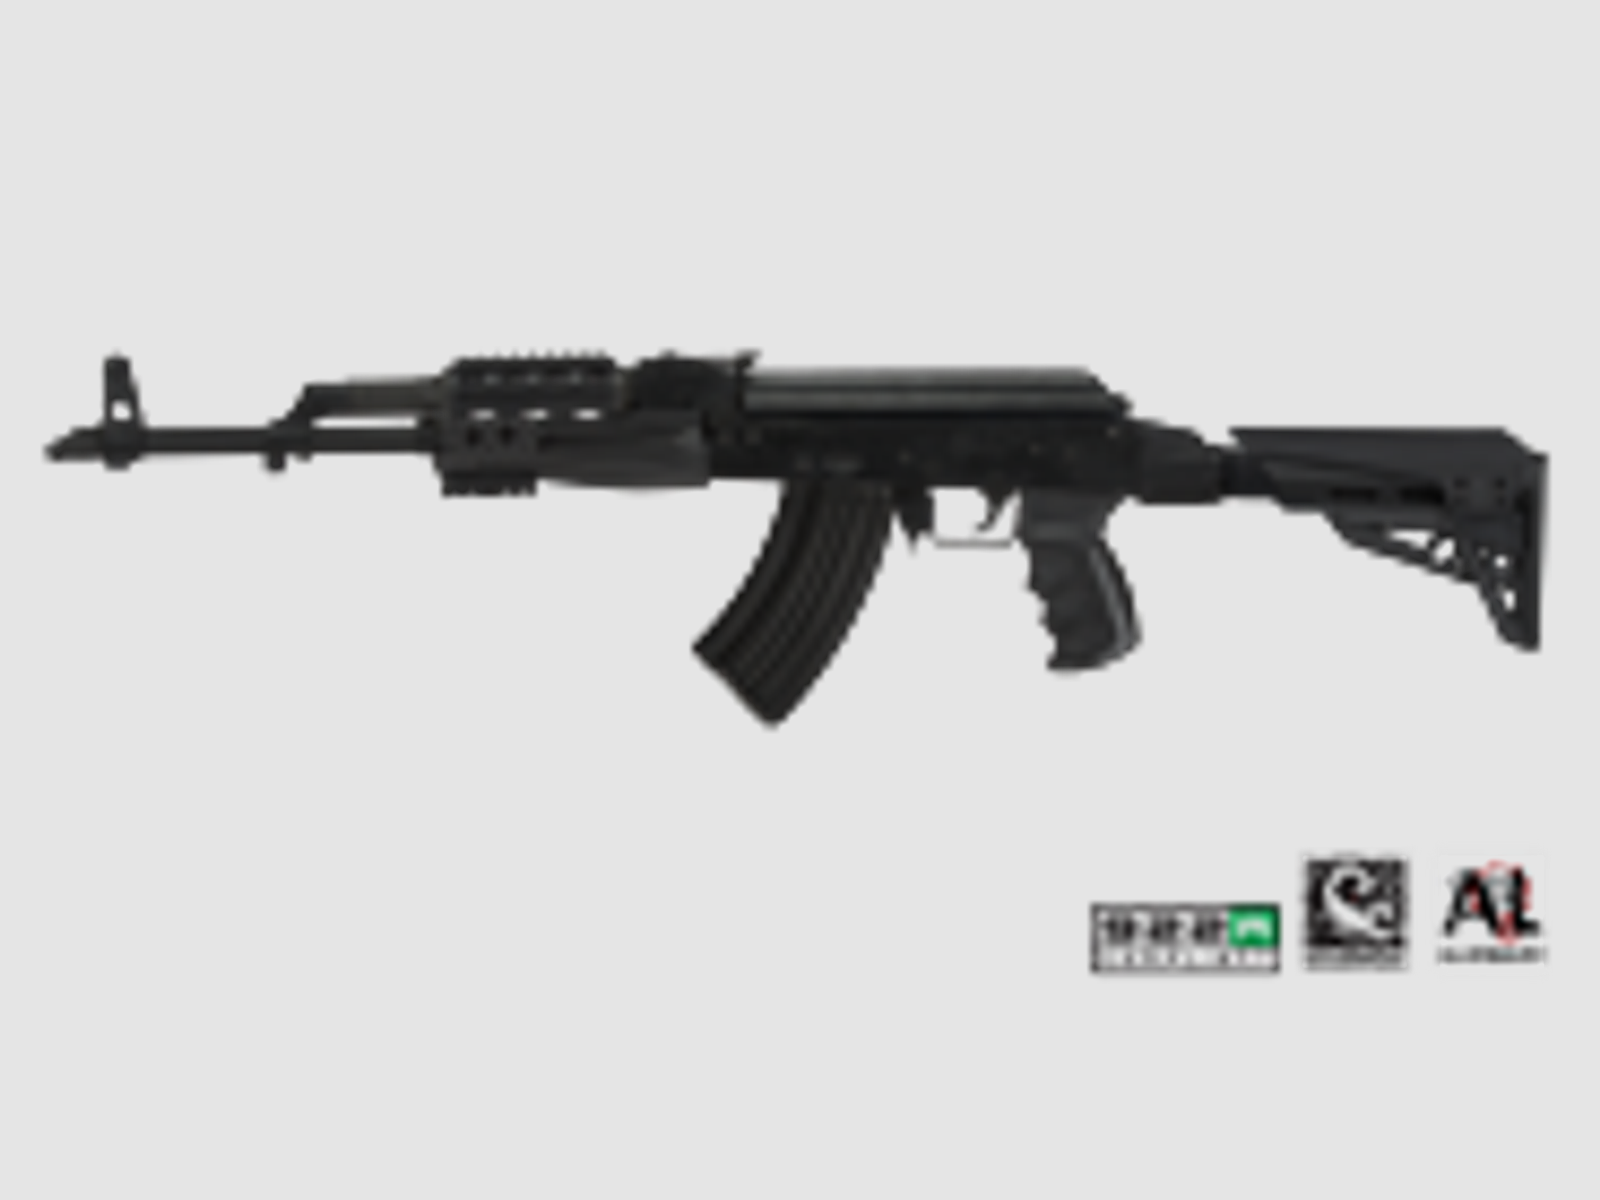 AK-47 / AK-74 Elite complete Package w/ Scorpion Recoil System ATI TactLite